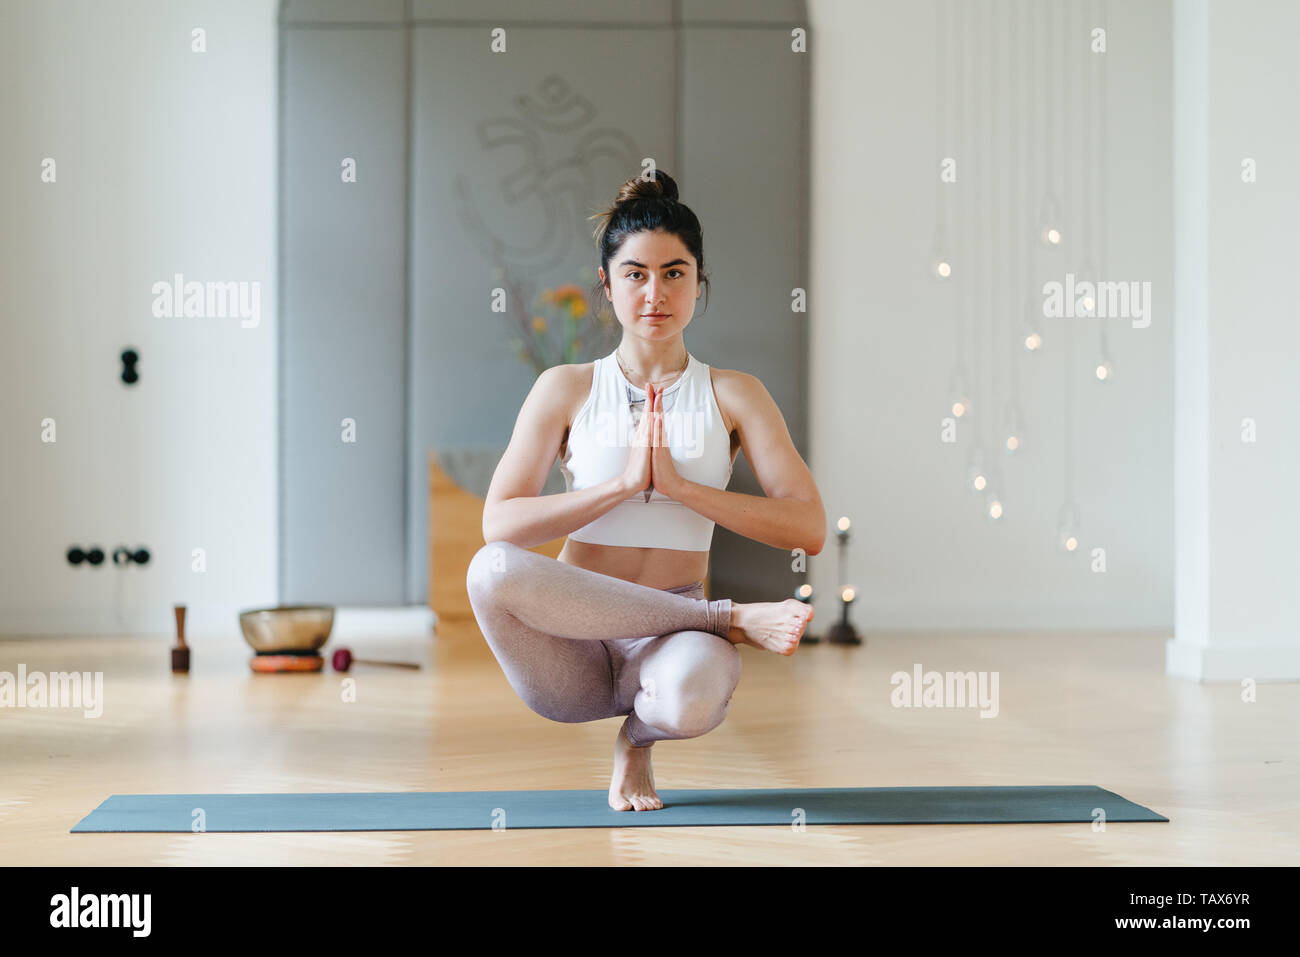 Ragazza di yoga in camera pulita con luce naturale Foto Stock